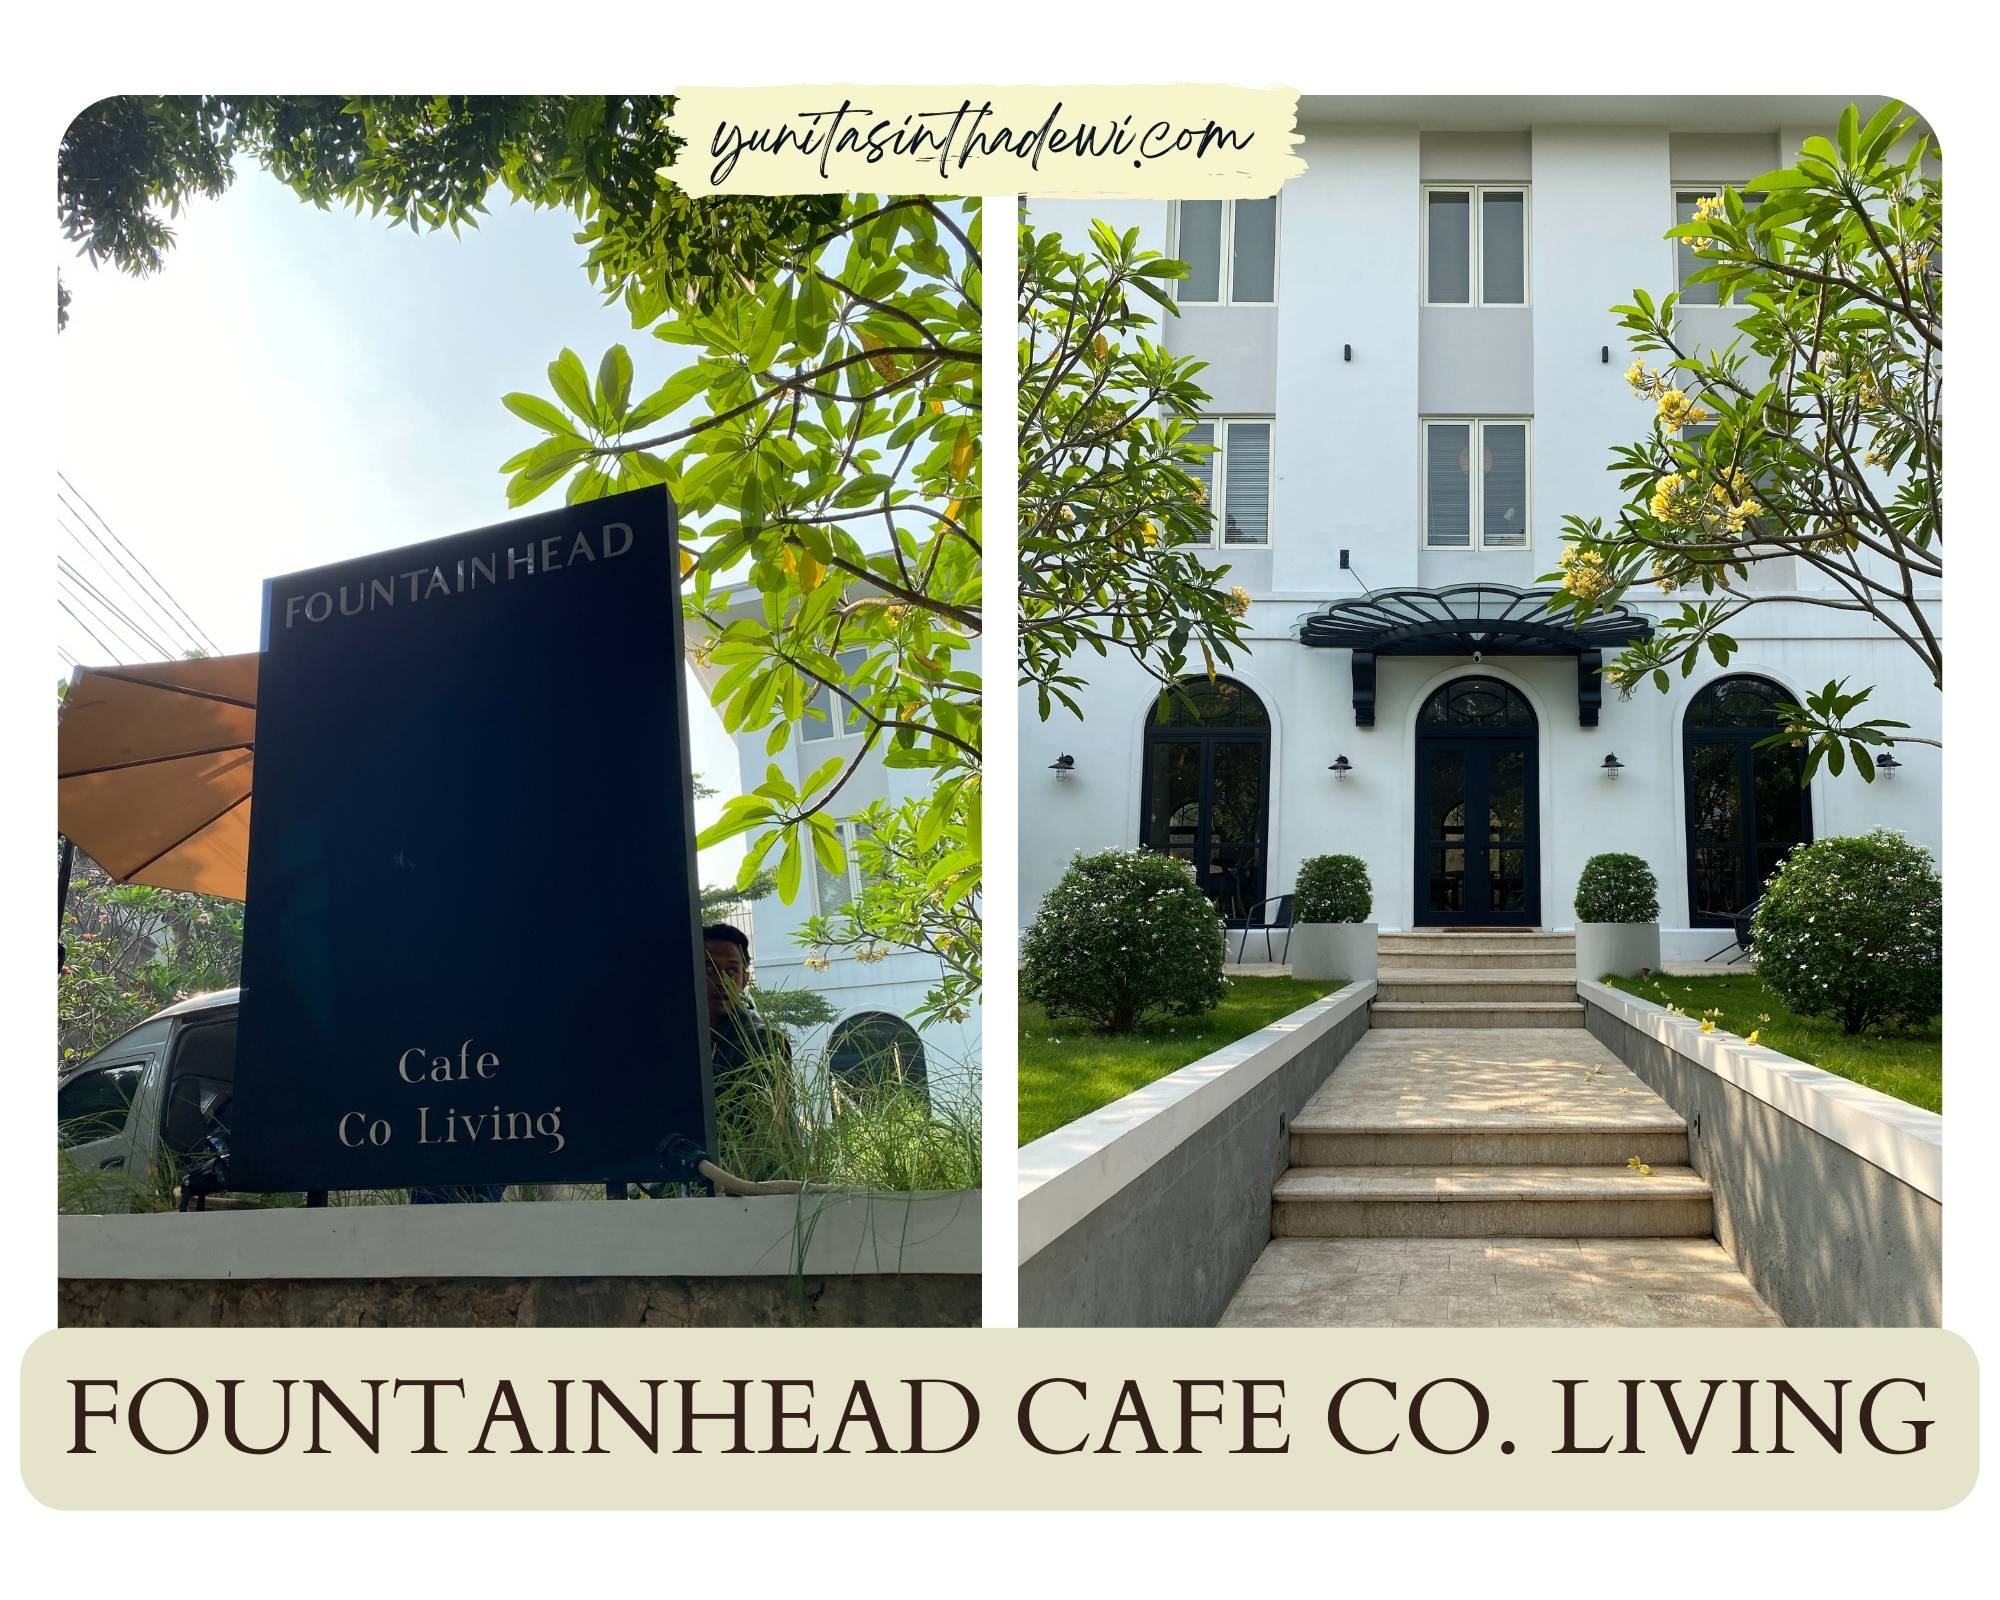 FountainHead Cafe Co.Living, cafe coffee terdekat, menu pasta, tempat minum kopi, tempat hangout, kerja di cafe, meruya